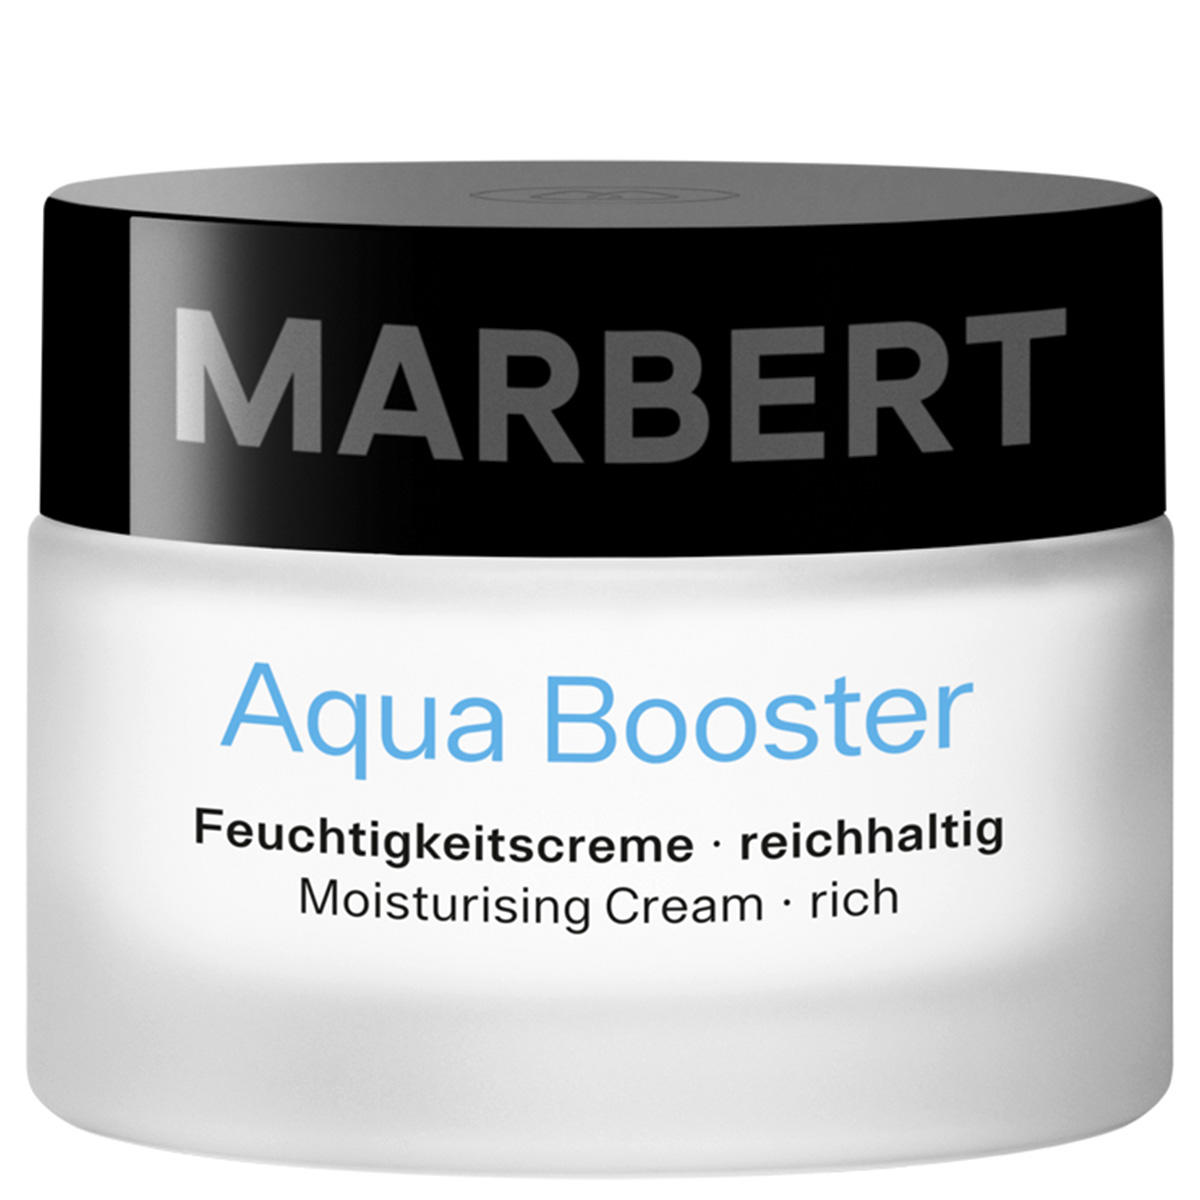 Marbert Aqua Booster Feuchtigkeitscreme reichhaltig 50 ml - 1